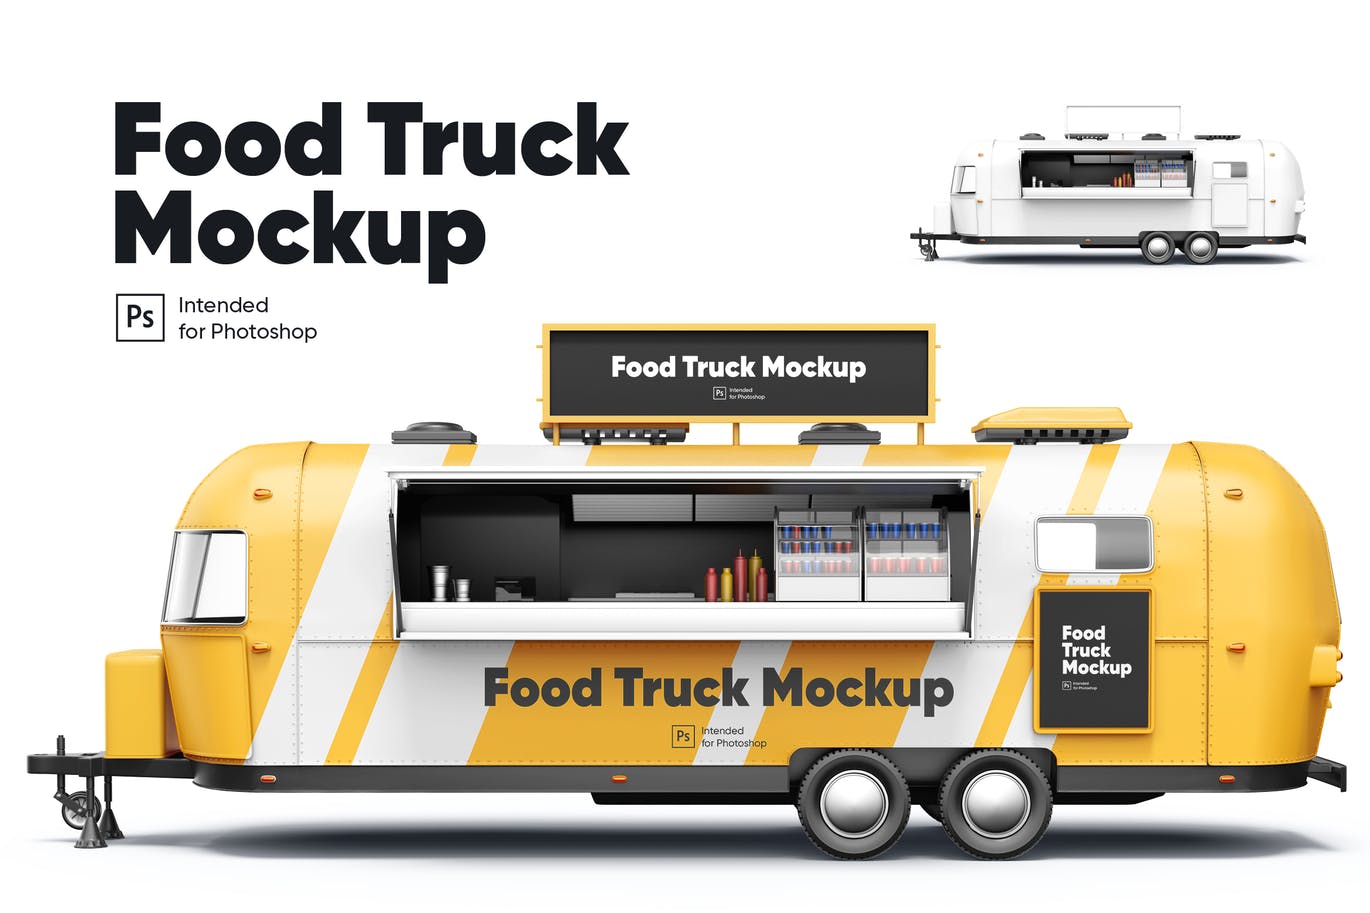 食品卡车车身广告设计样机 (PSD)